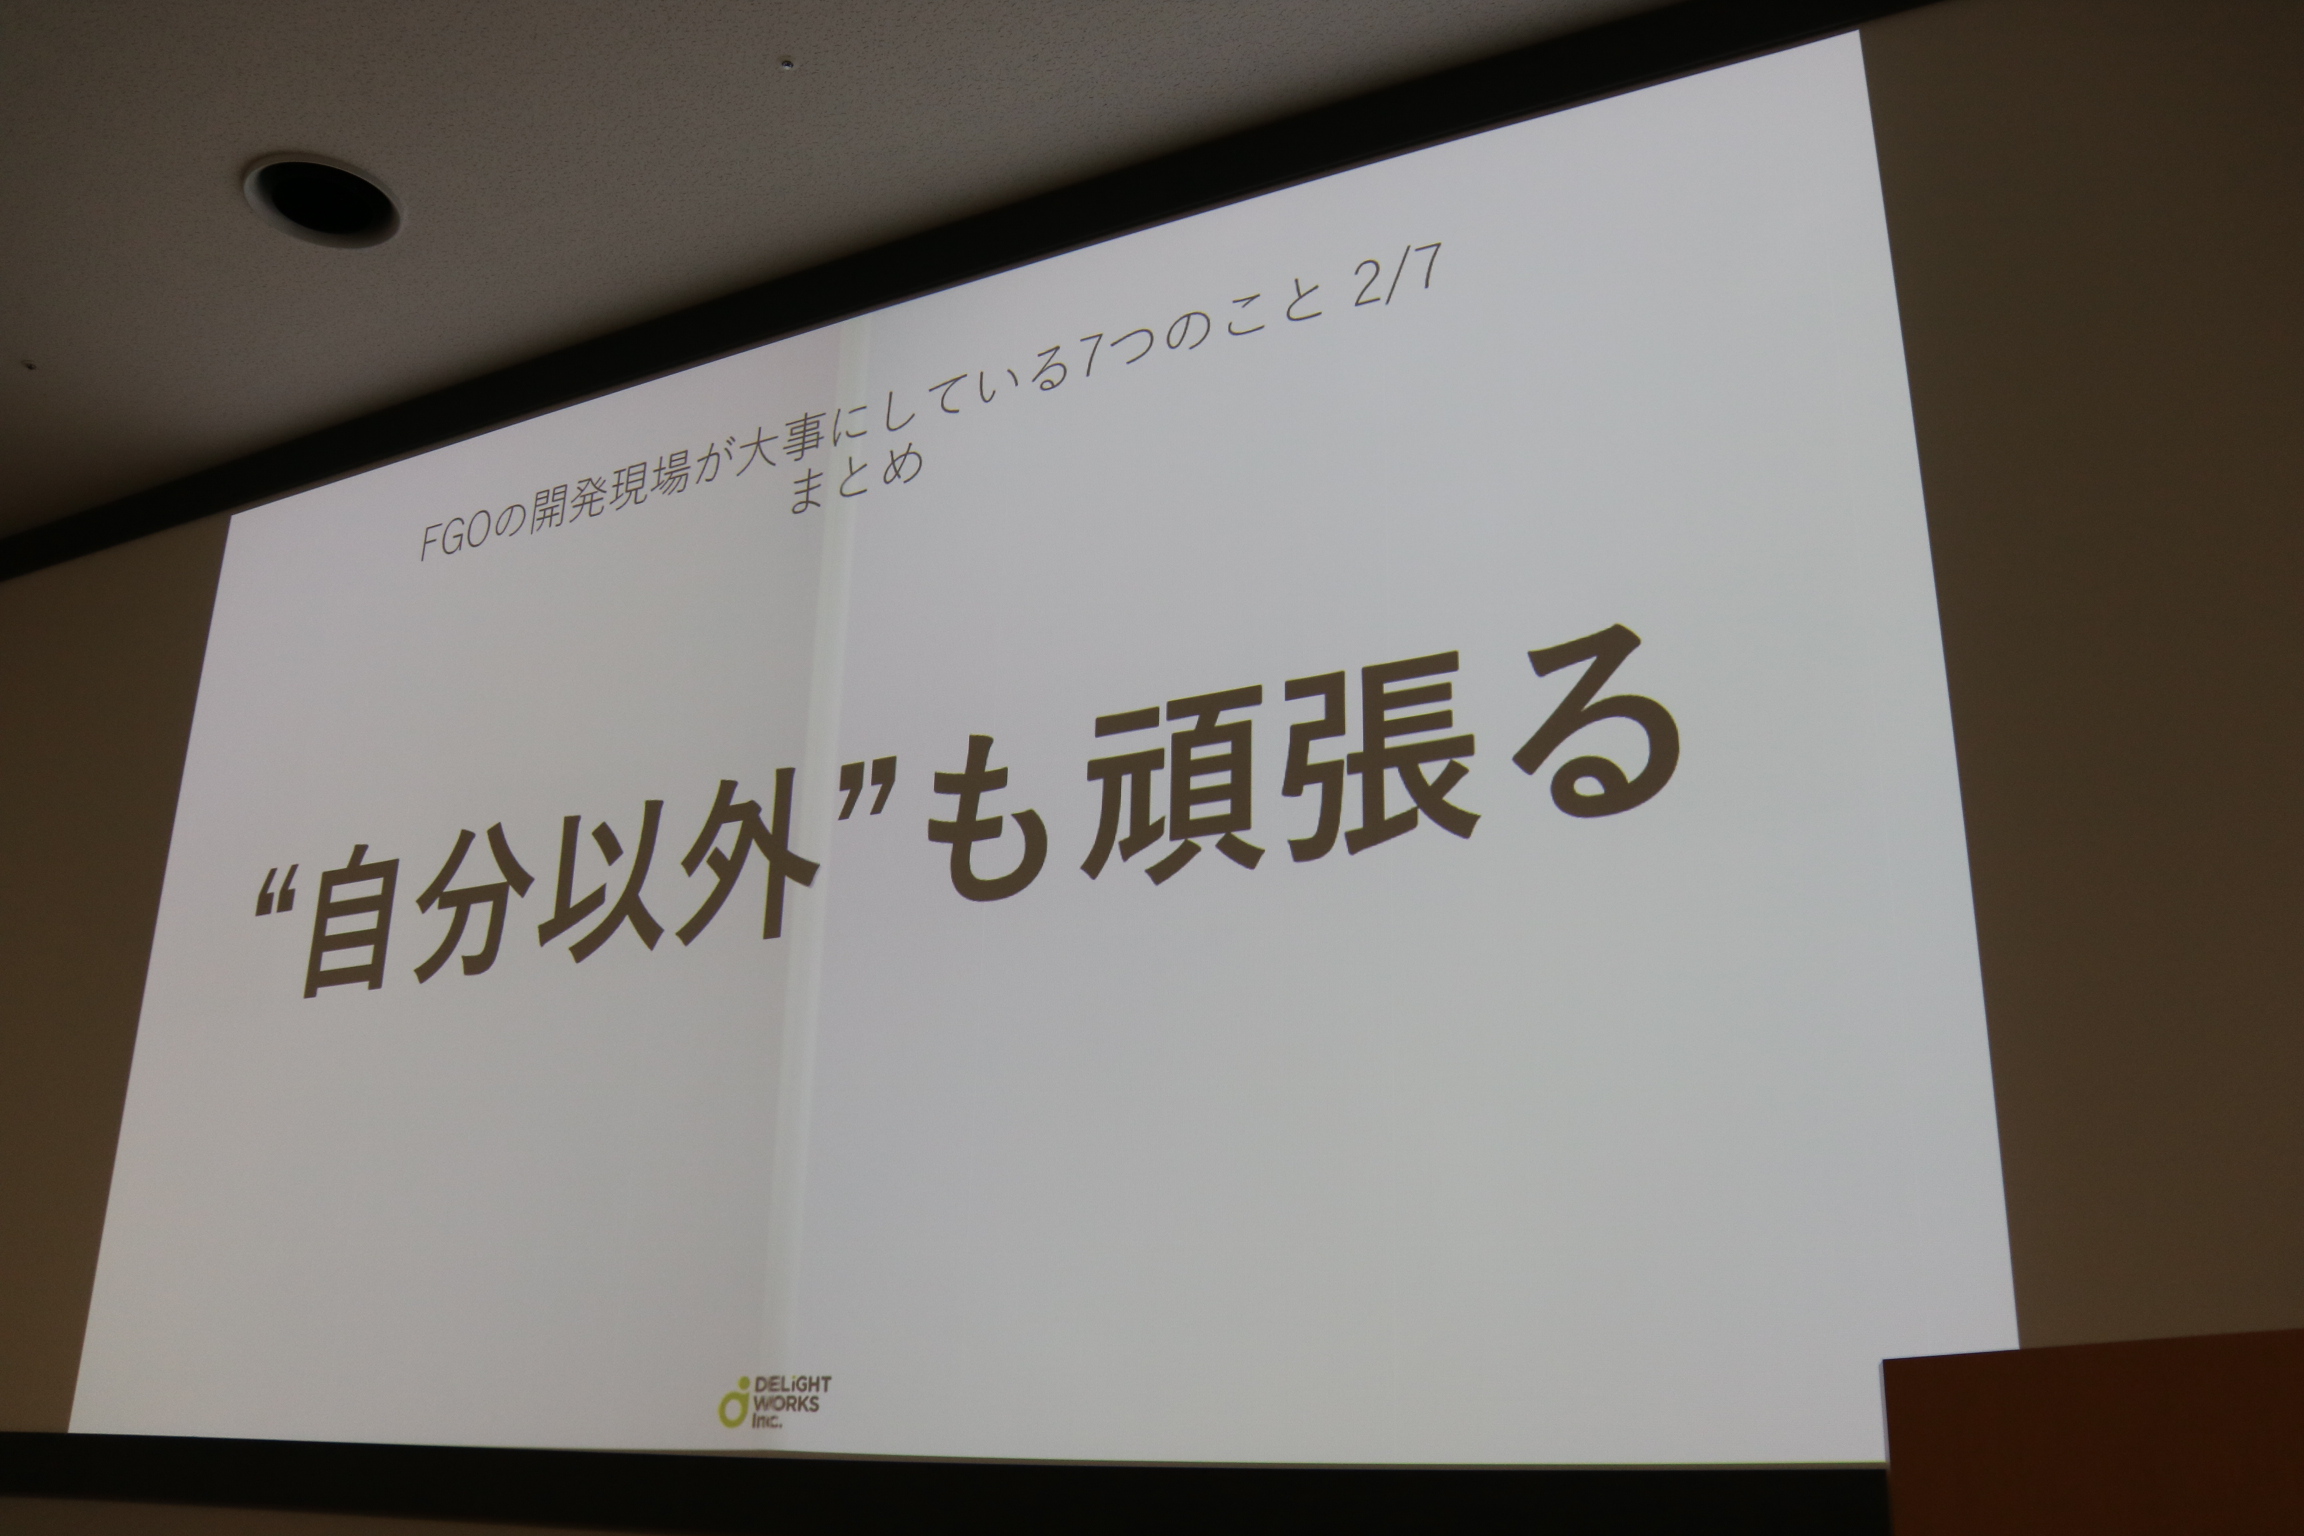 ディライトワークスの塩川洋介氏が日本工学院専門学校で講演を実施。「Fate/Grand Order」の開発現場が大事にしている7つのポイントとはディライトワークスの塩川洋介氏が日本工学院専門学校で講演を実施。「Fate/Grand Order」の開発現場が大事にしている7つのポイントとは